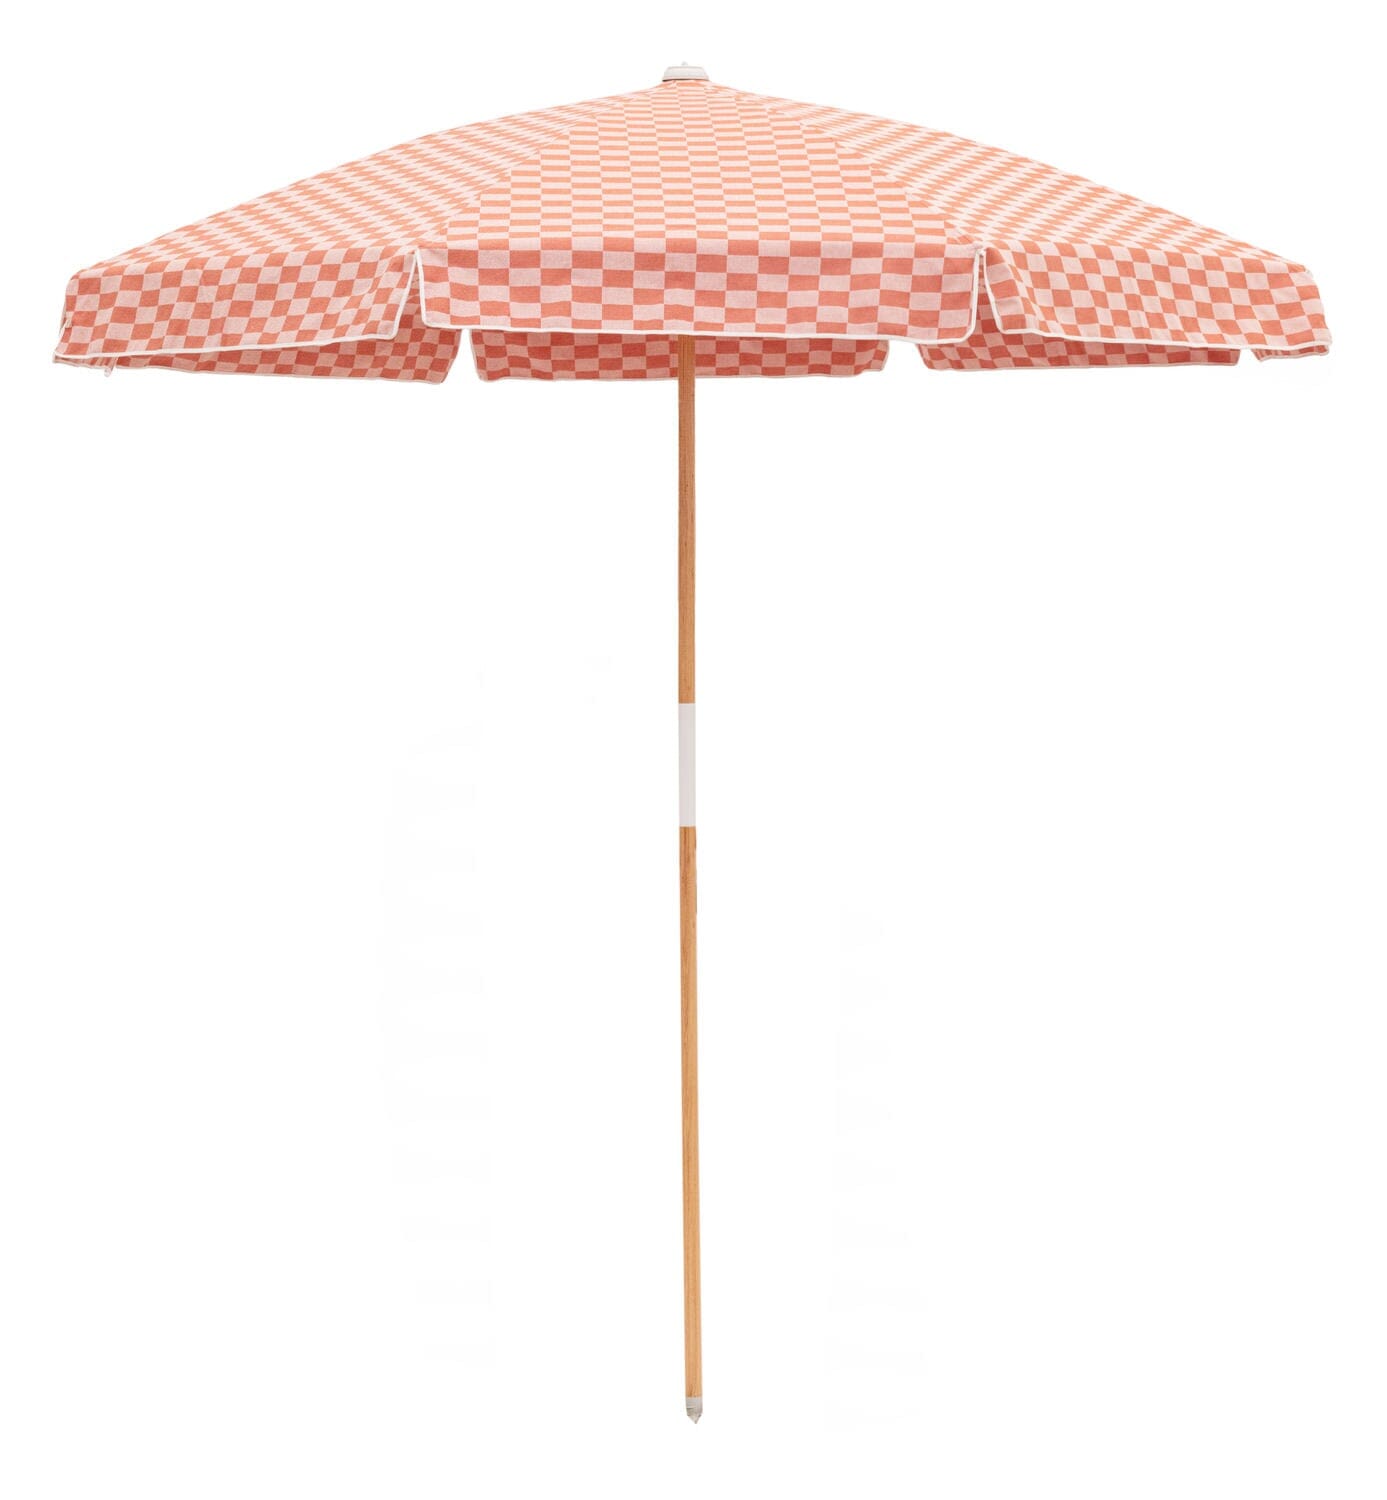 The Amalfi Umbrella - Le Sirenuse Check Amalfi Umbrella Business & Pleasure Co 